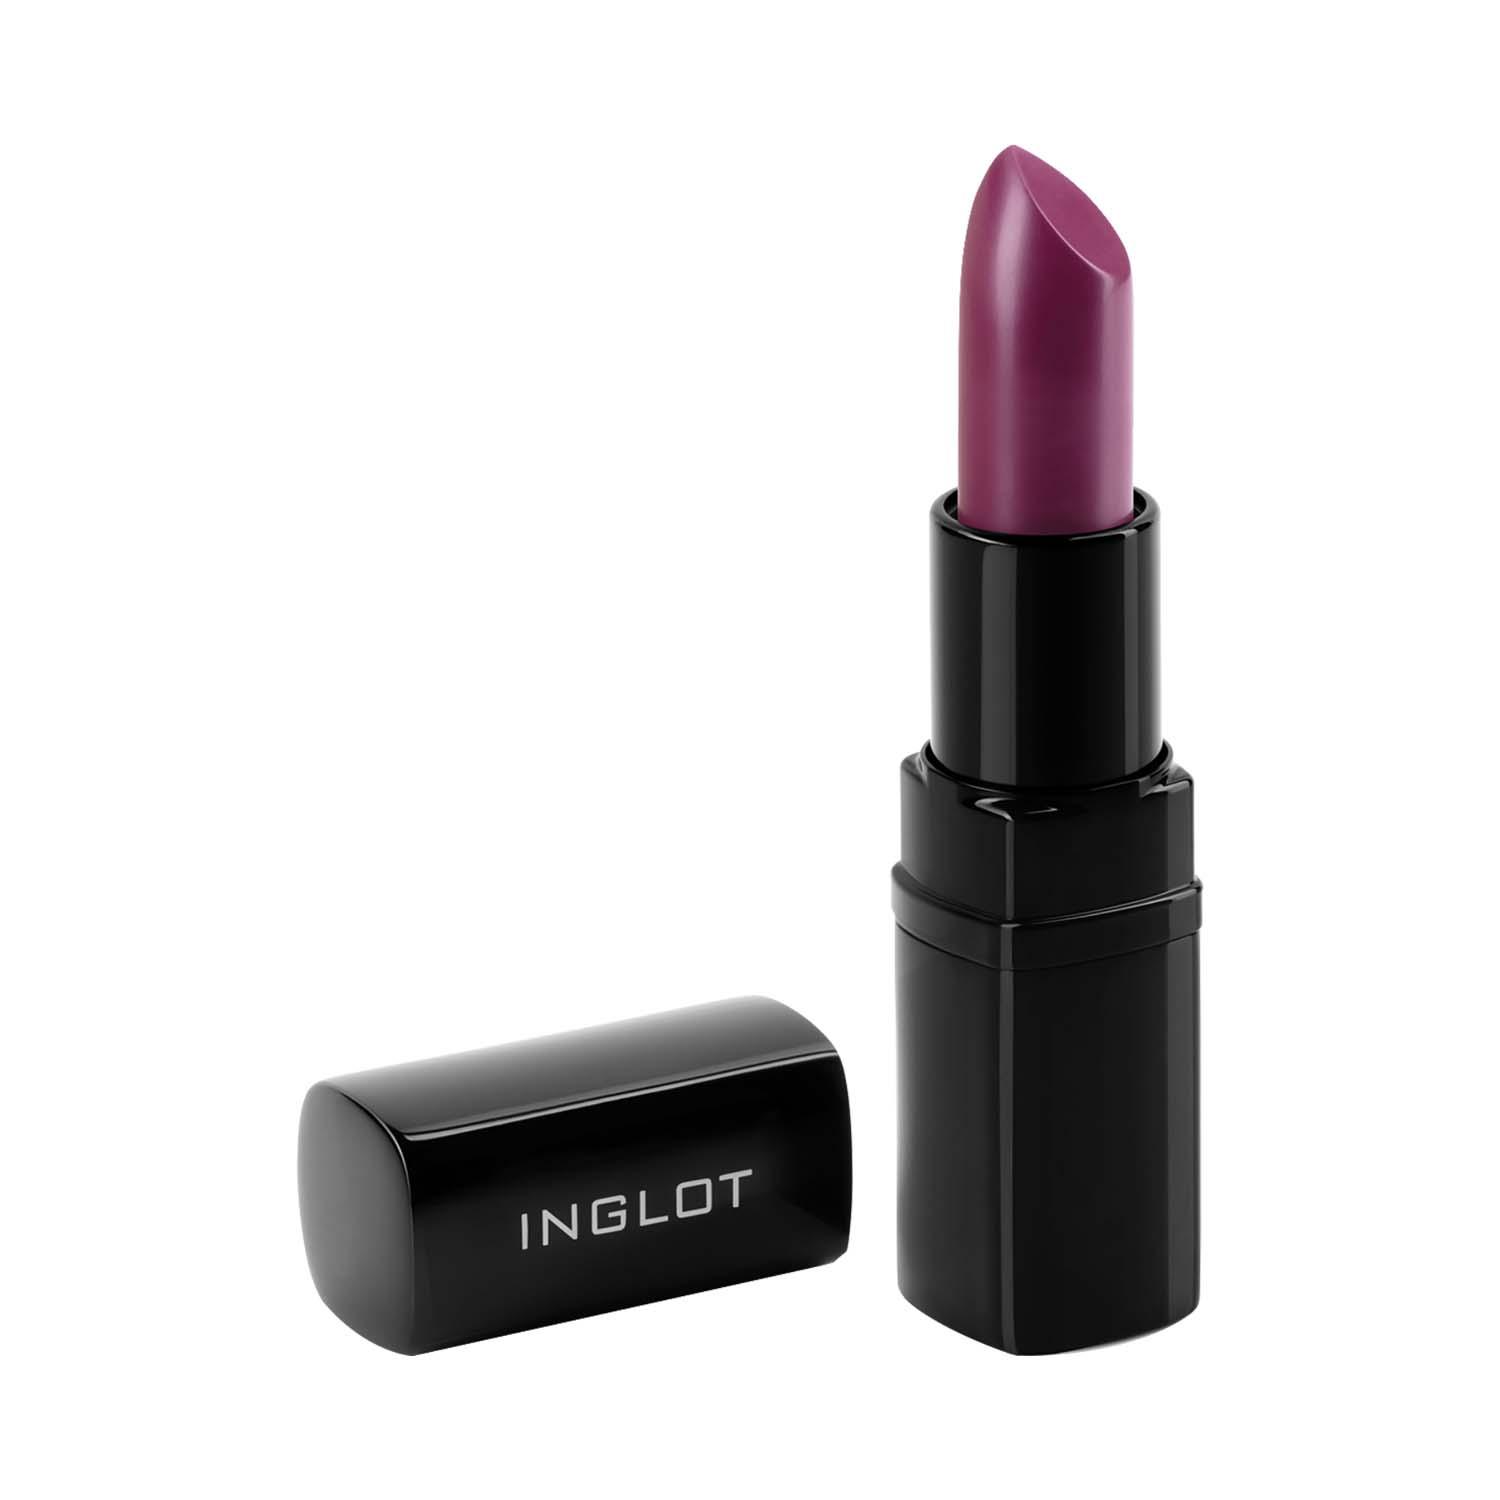 INGLOT | INGLOT Matte Lipstick - 426 (4.5 g)